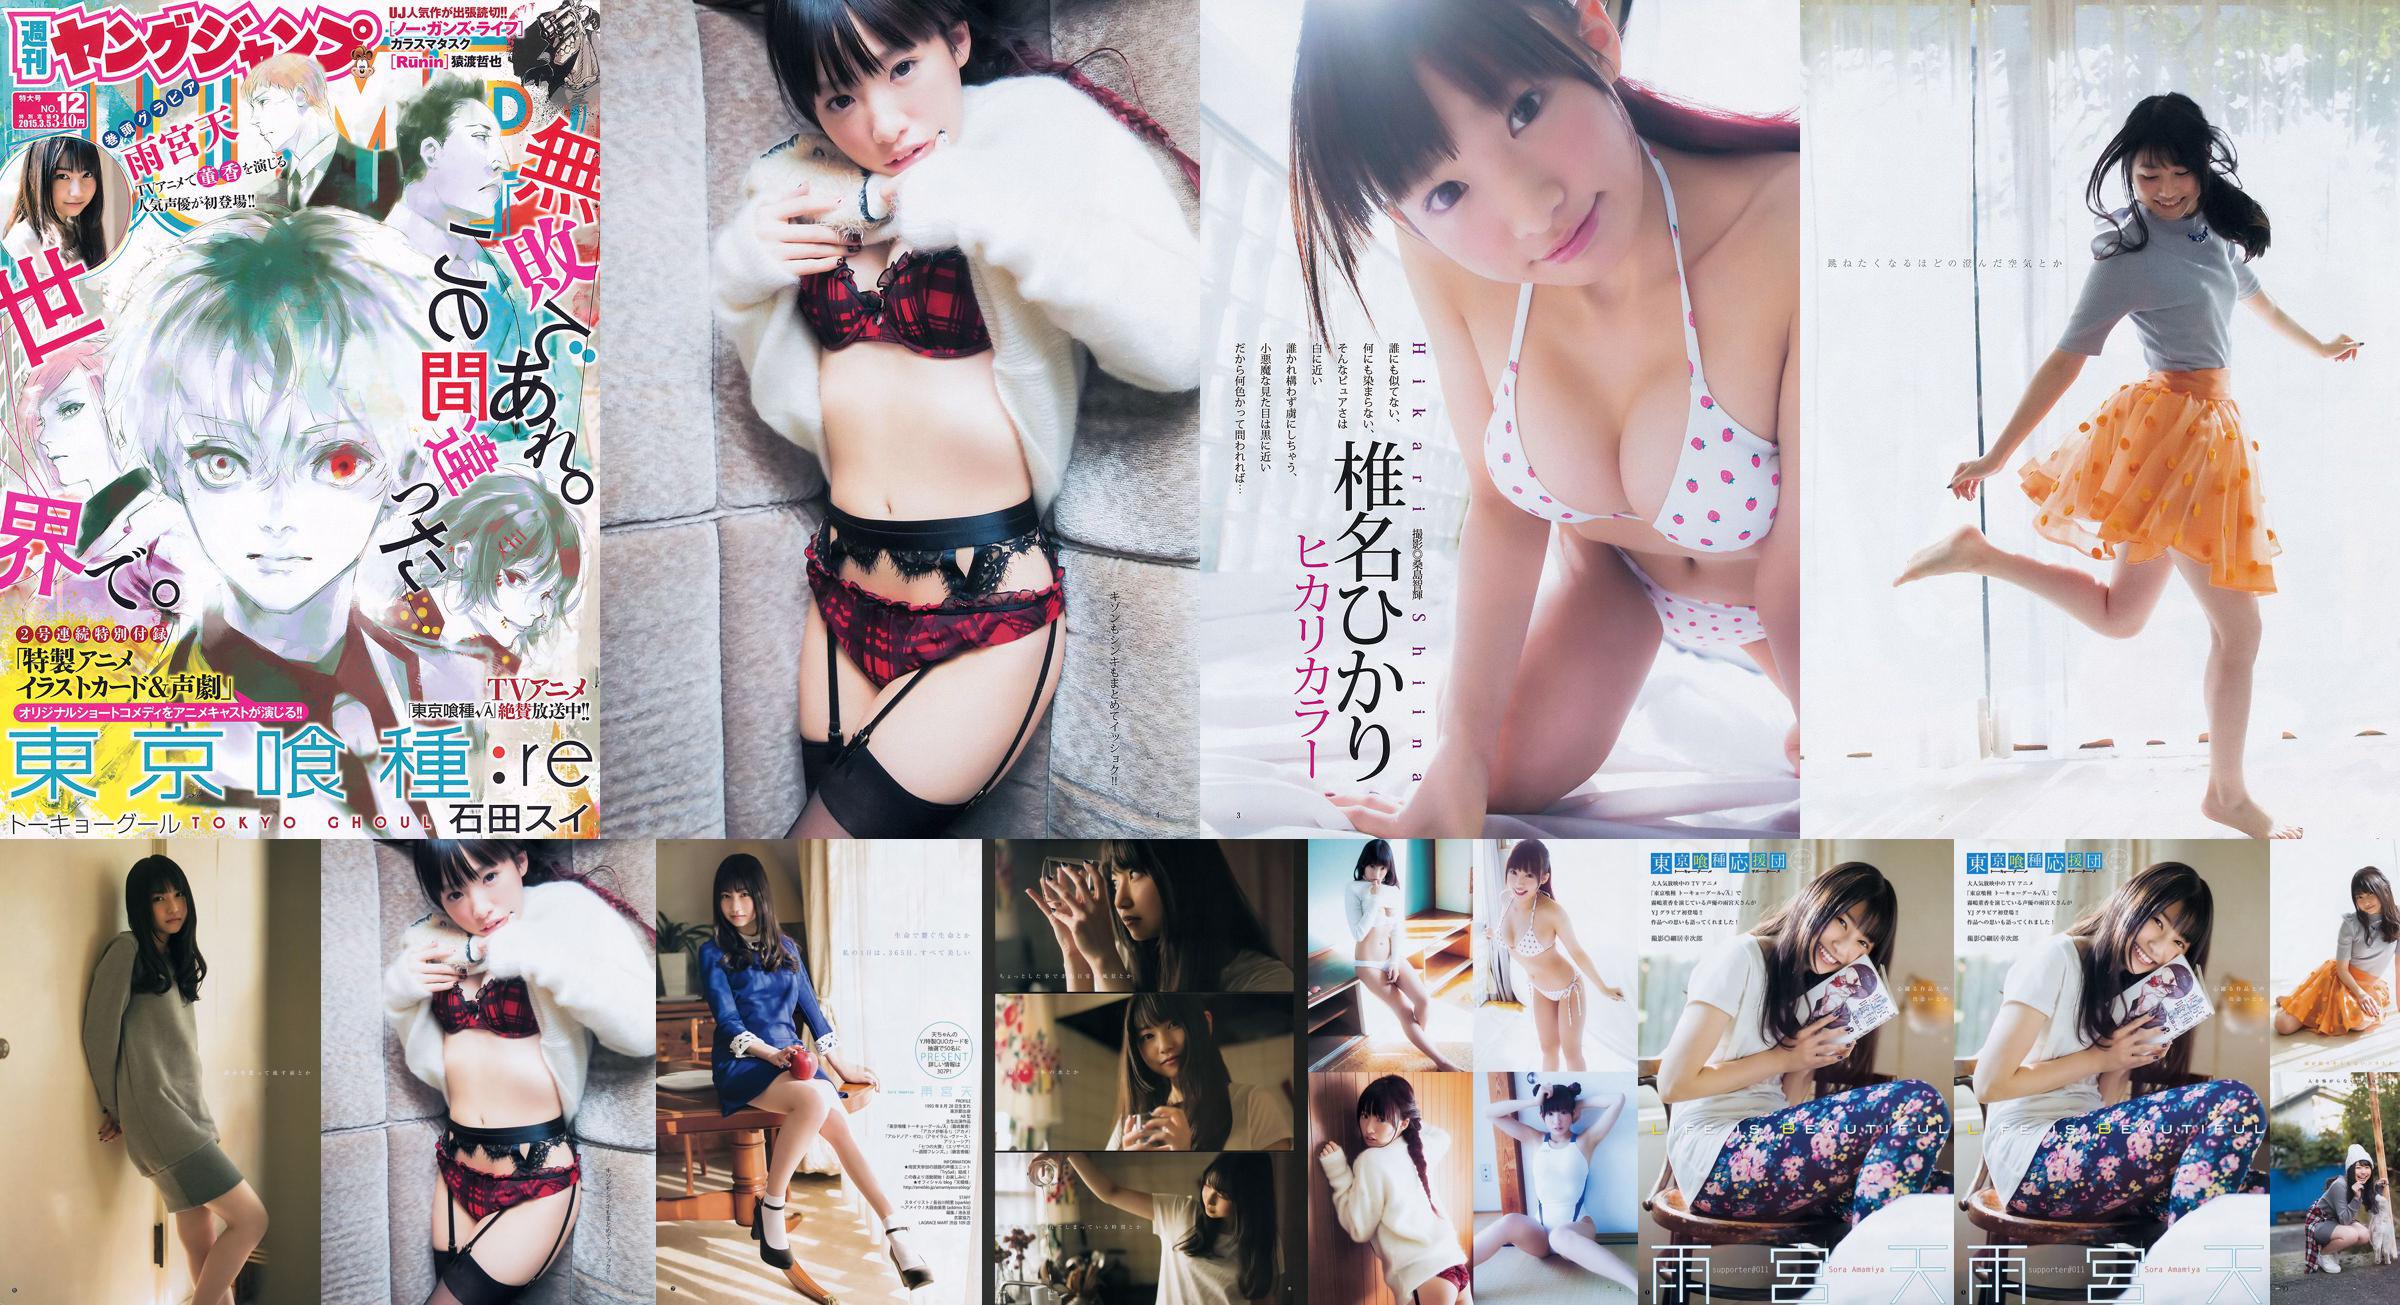 Amamiya Tian Shiina ひ か り [Weekly Young Jump] Tạp chí ảnh số 12 năm 2015 No.3dc66f Trang 4